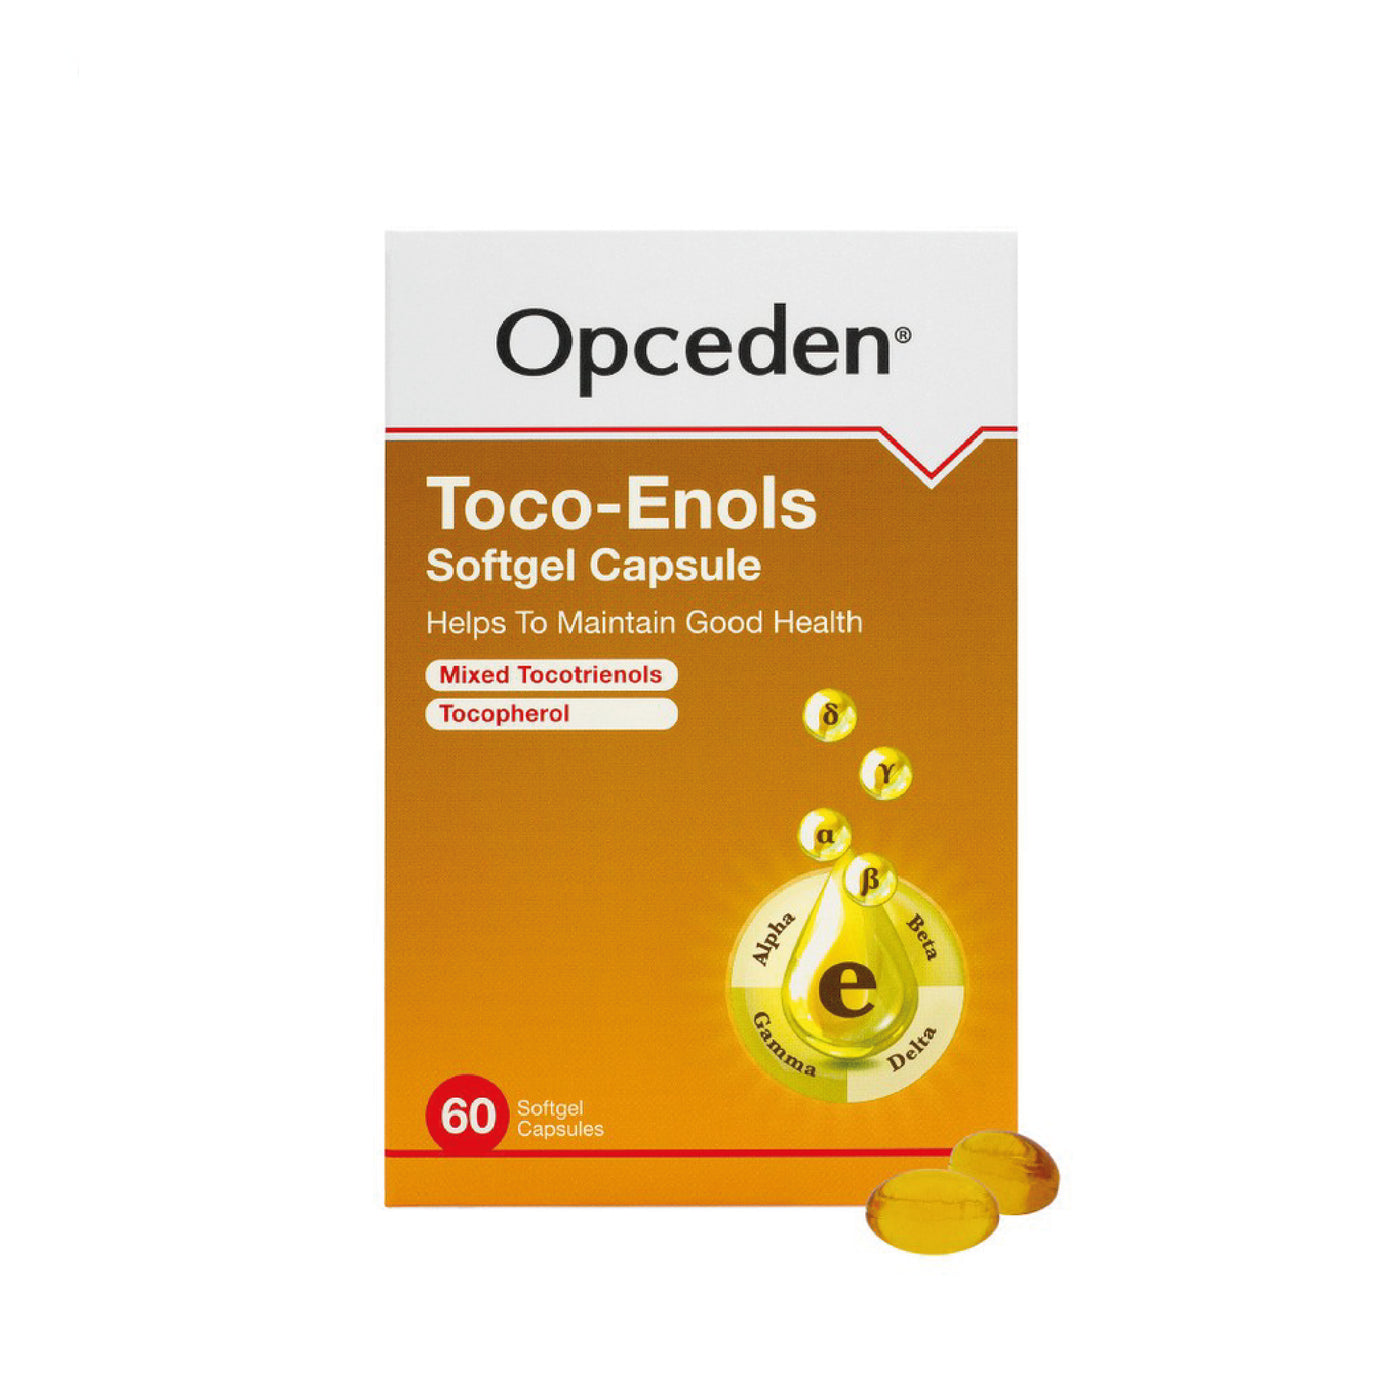 OPCEDEN TOCO-ENOLS CAPSULE 60's